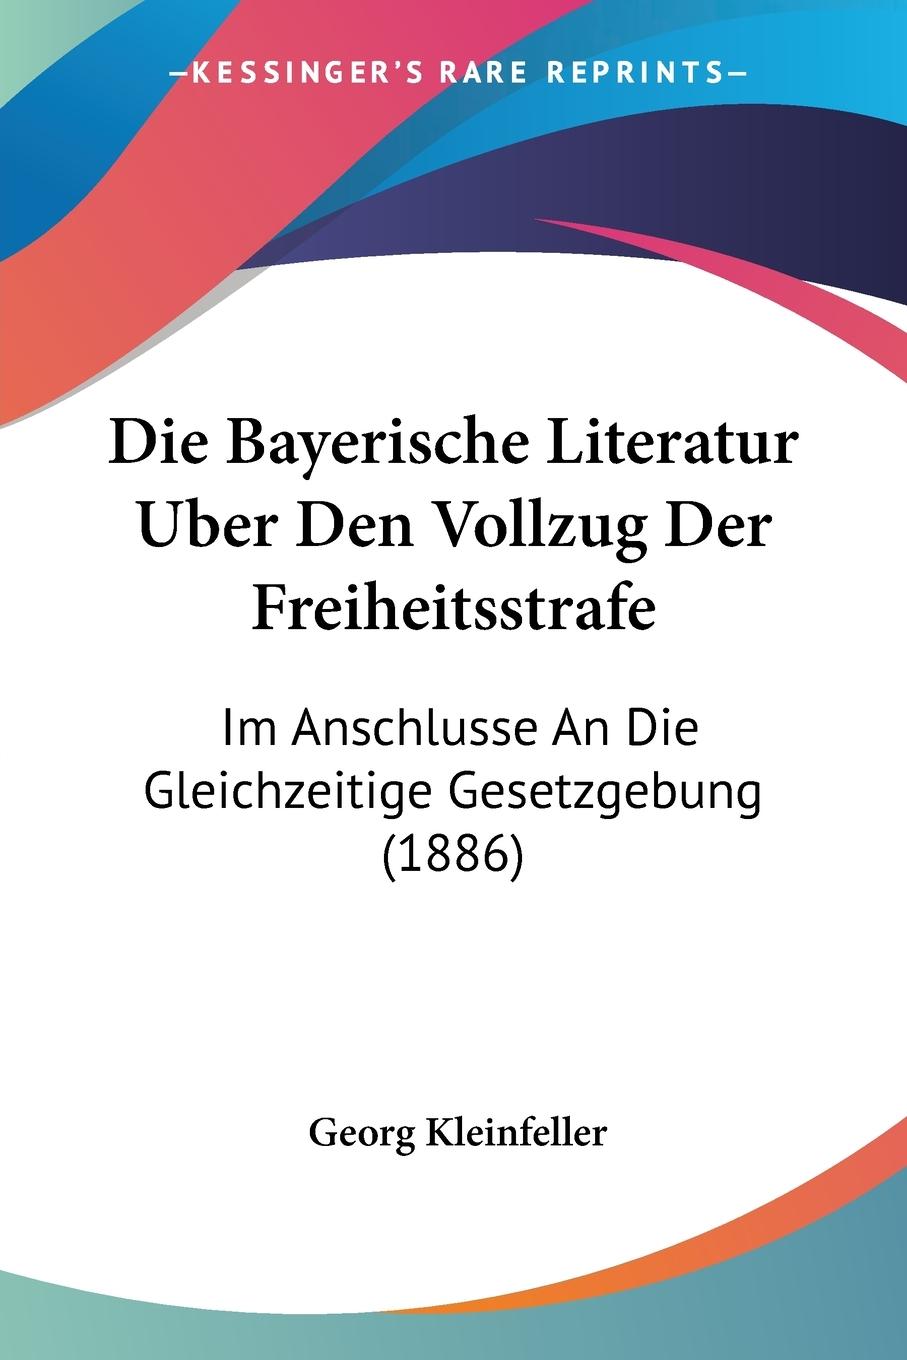 Die Bayerische Literatur Uber Den Vollzug Der Freiheitsstrafe - Kleinfeller, Georg